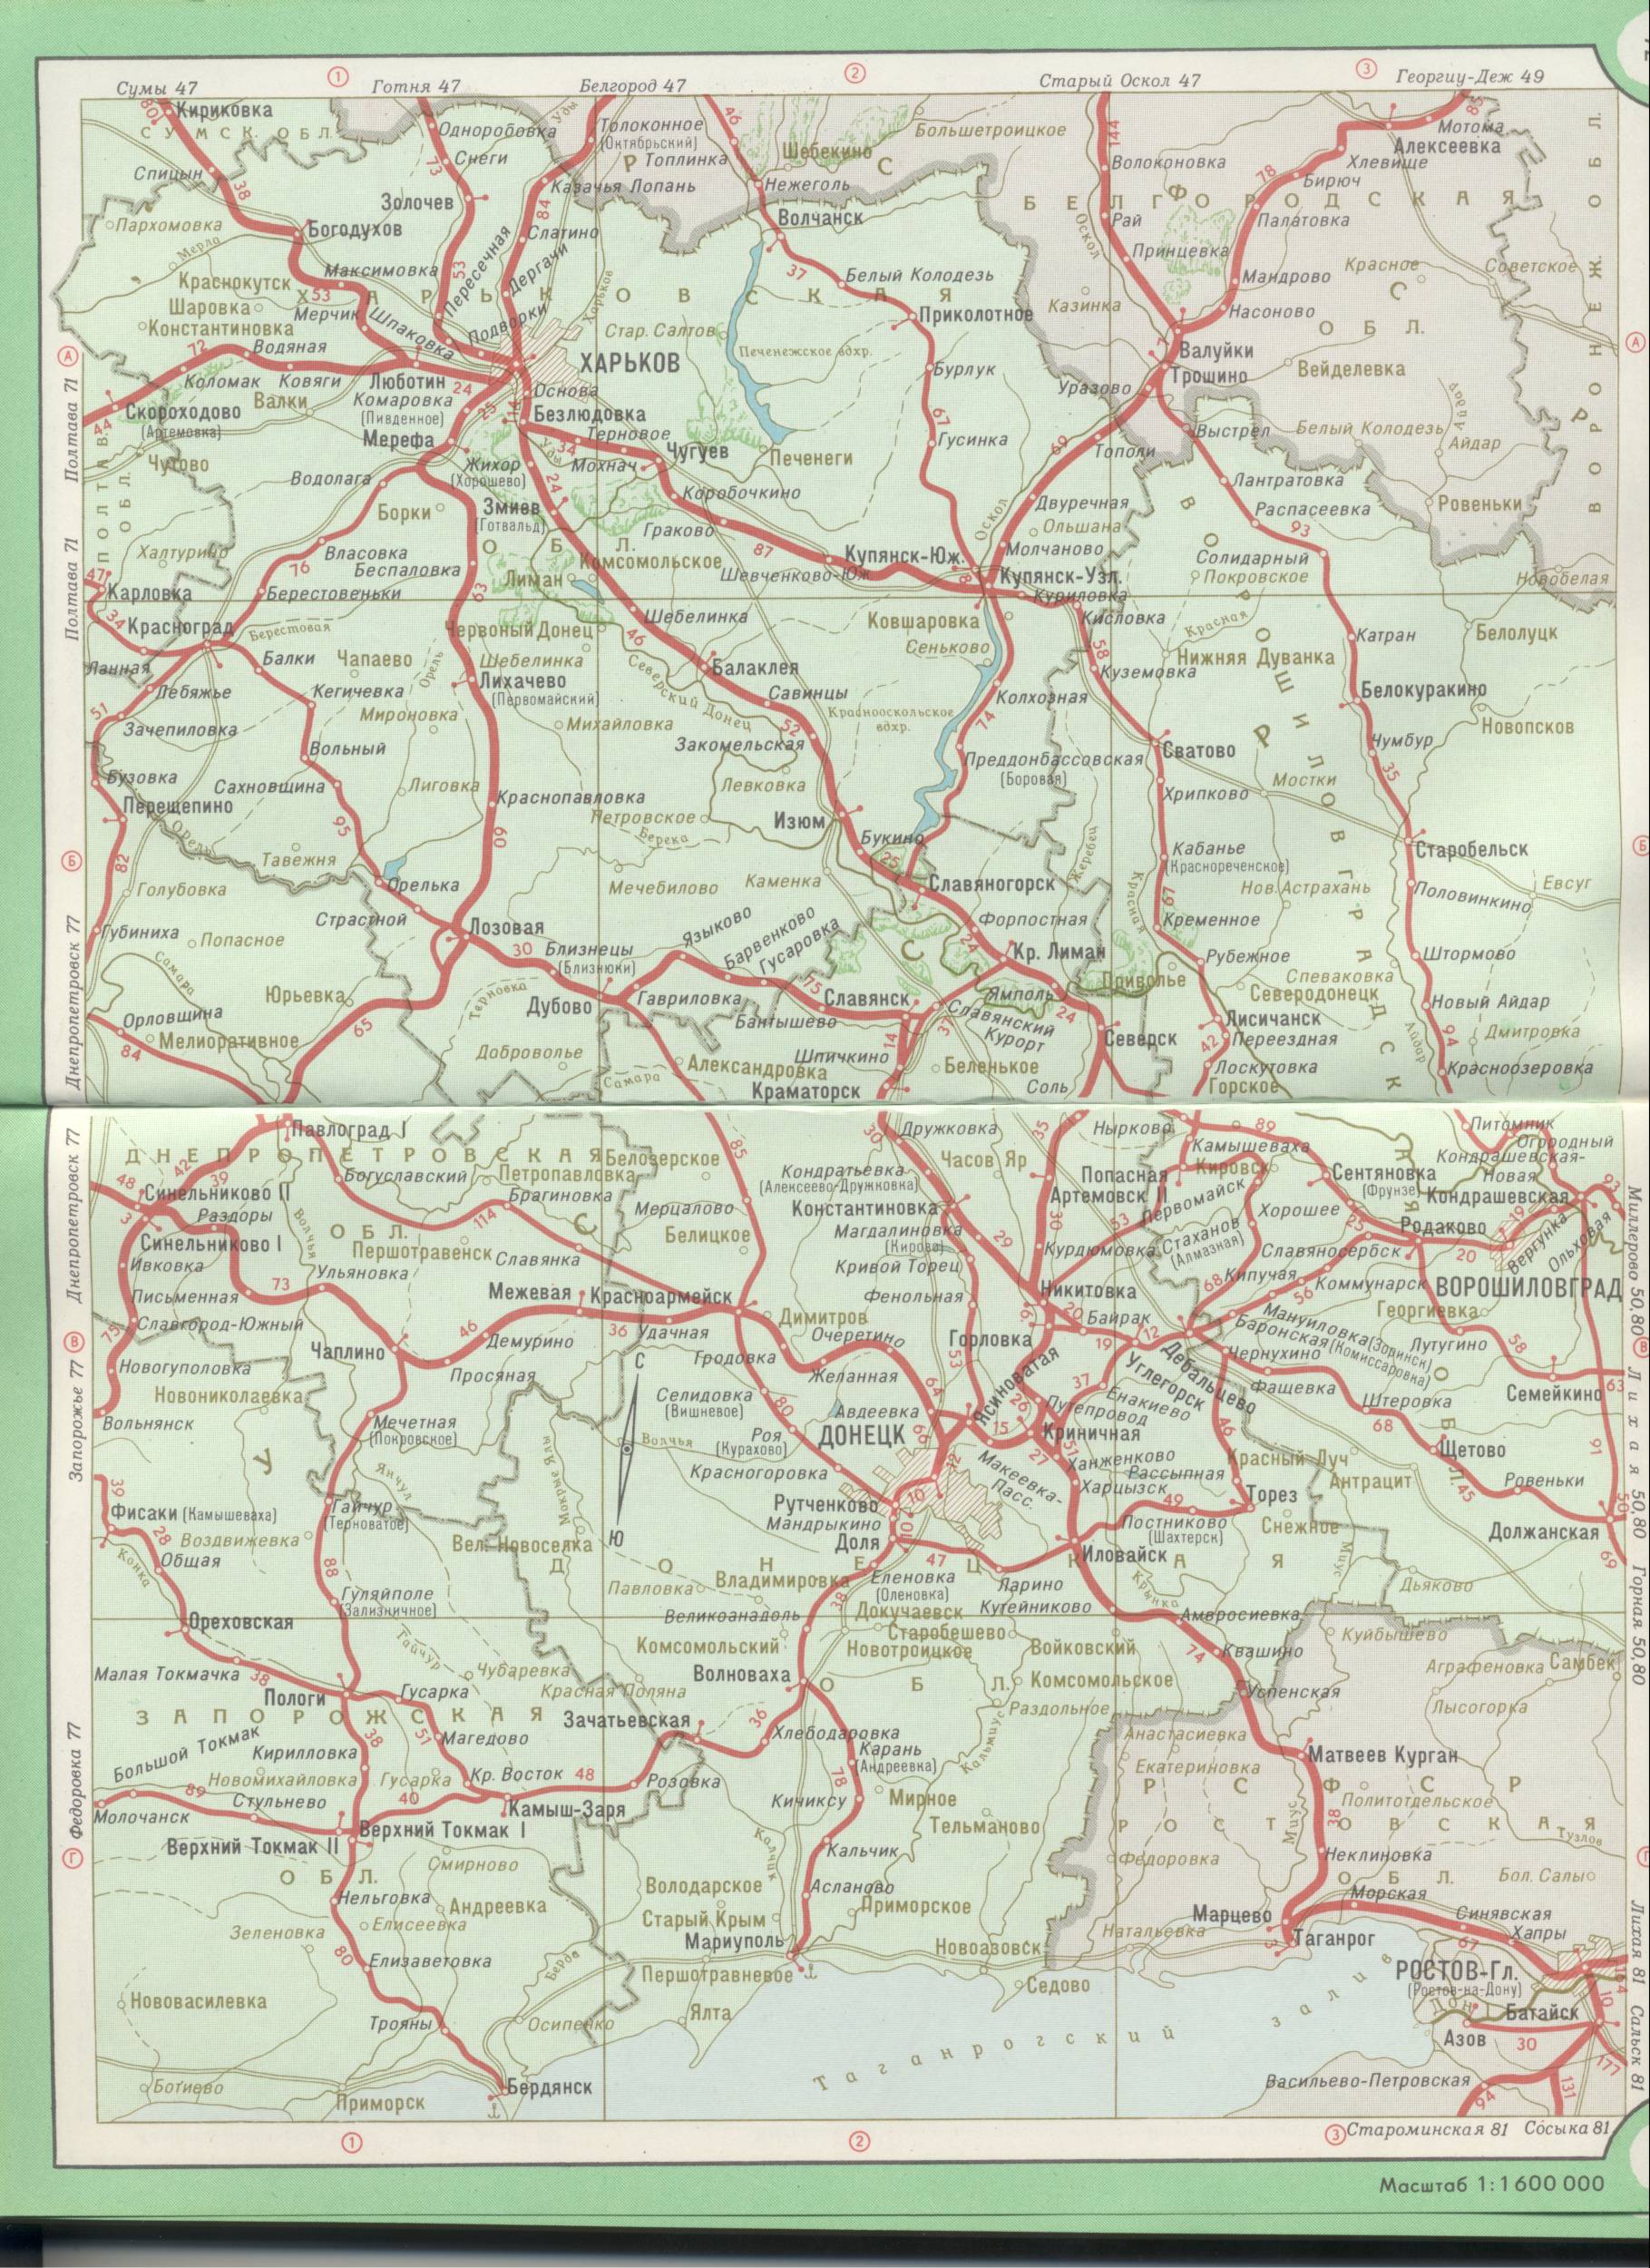 Карта Украины. Схема железных дорог Украины - Харьков, Днепропетровск